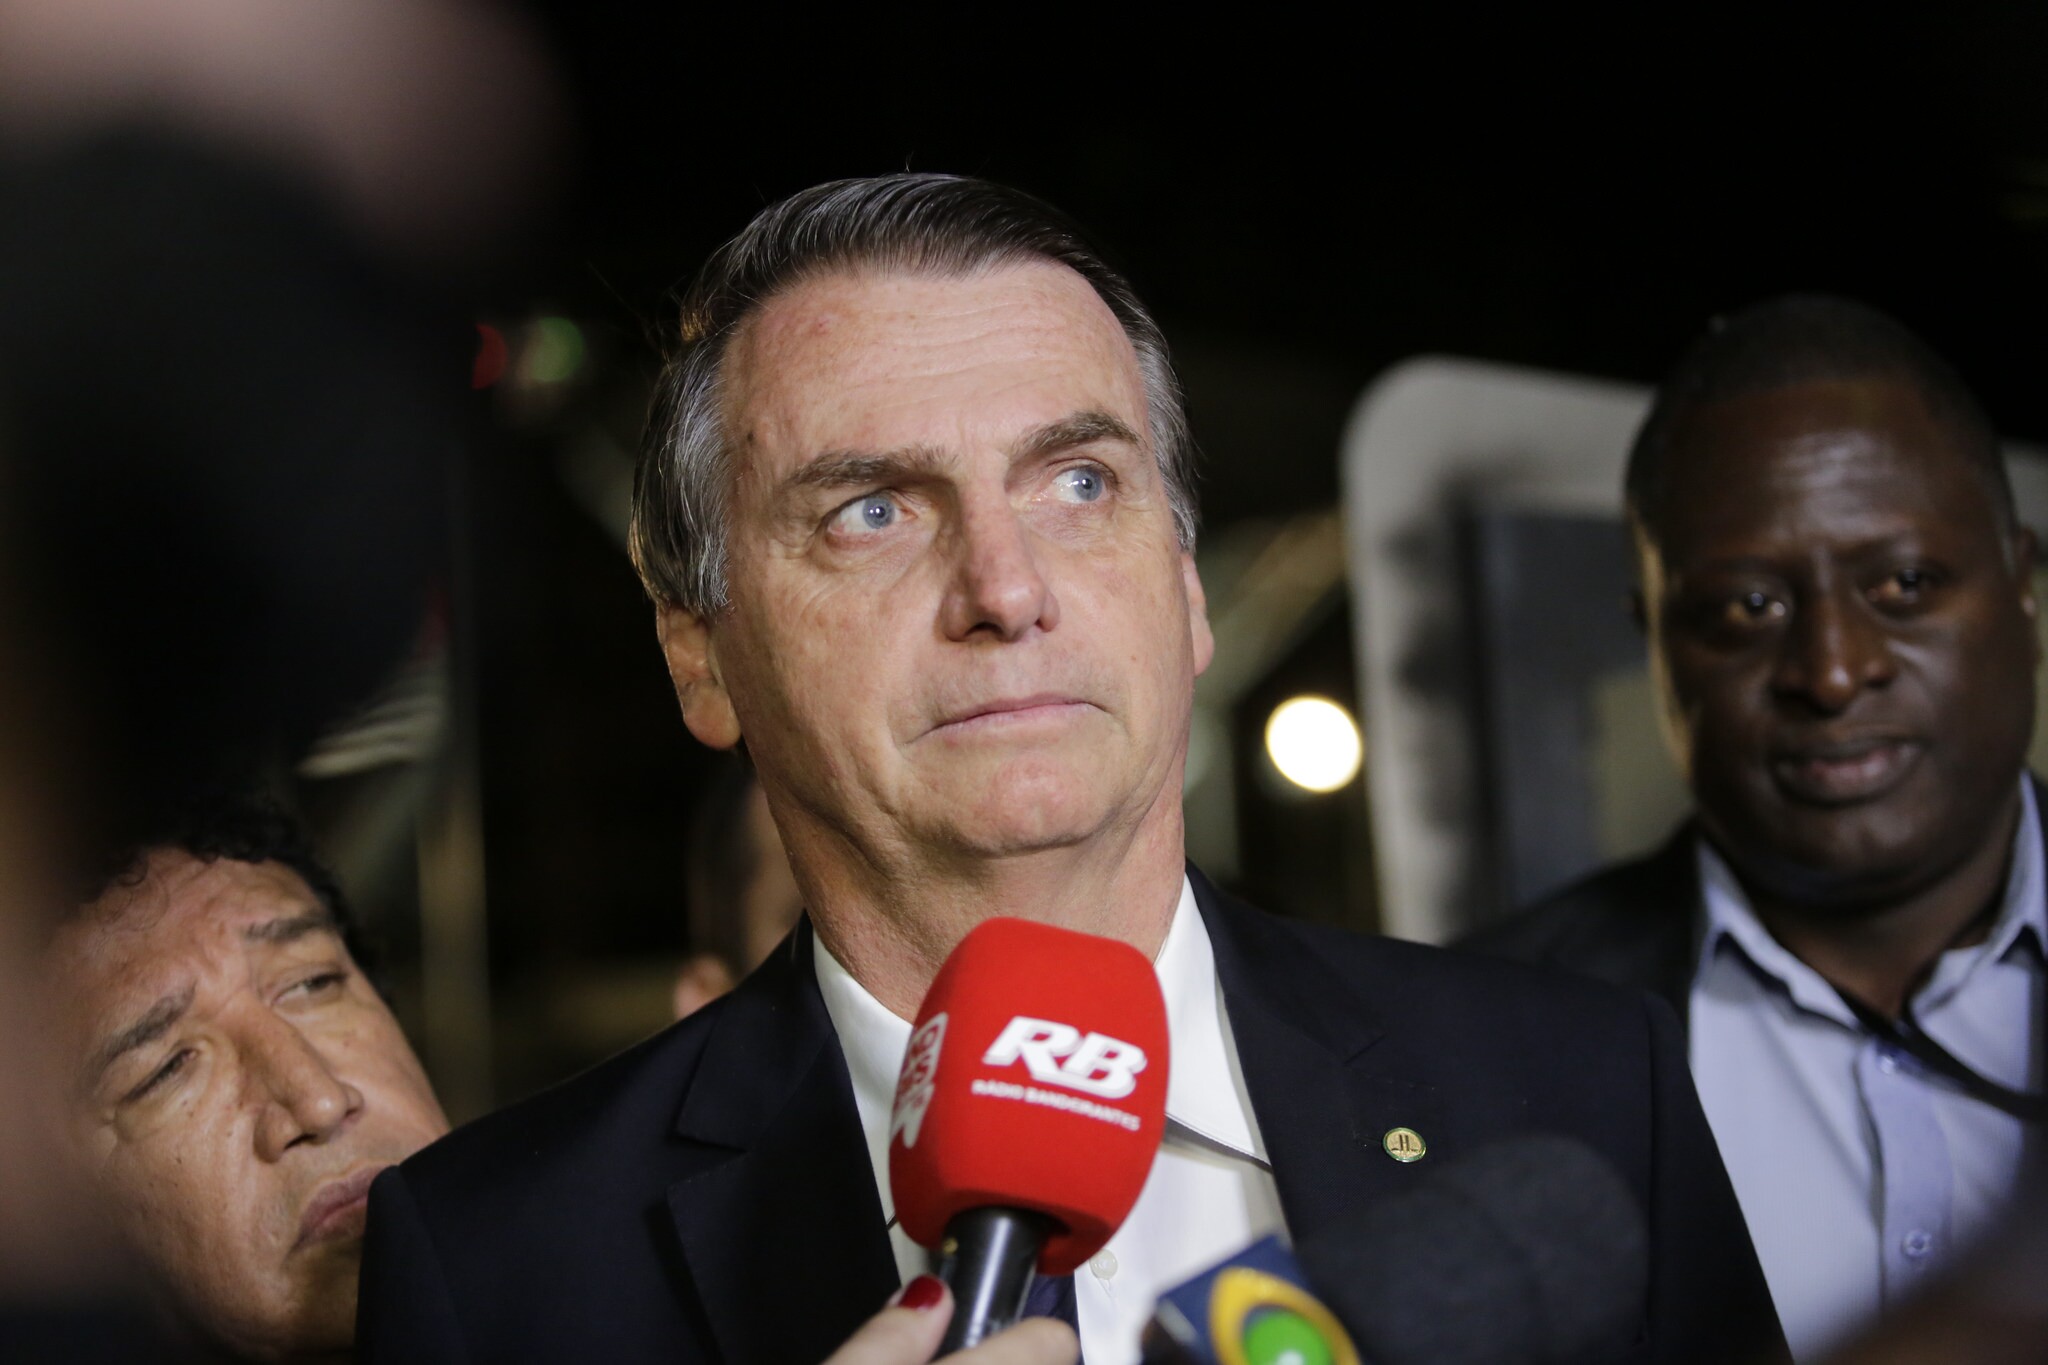 O presidenciável Jair Bolsonaro, durante o debate da TV Bandeirantes, em 9 de agosto